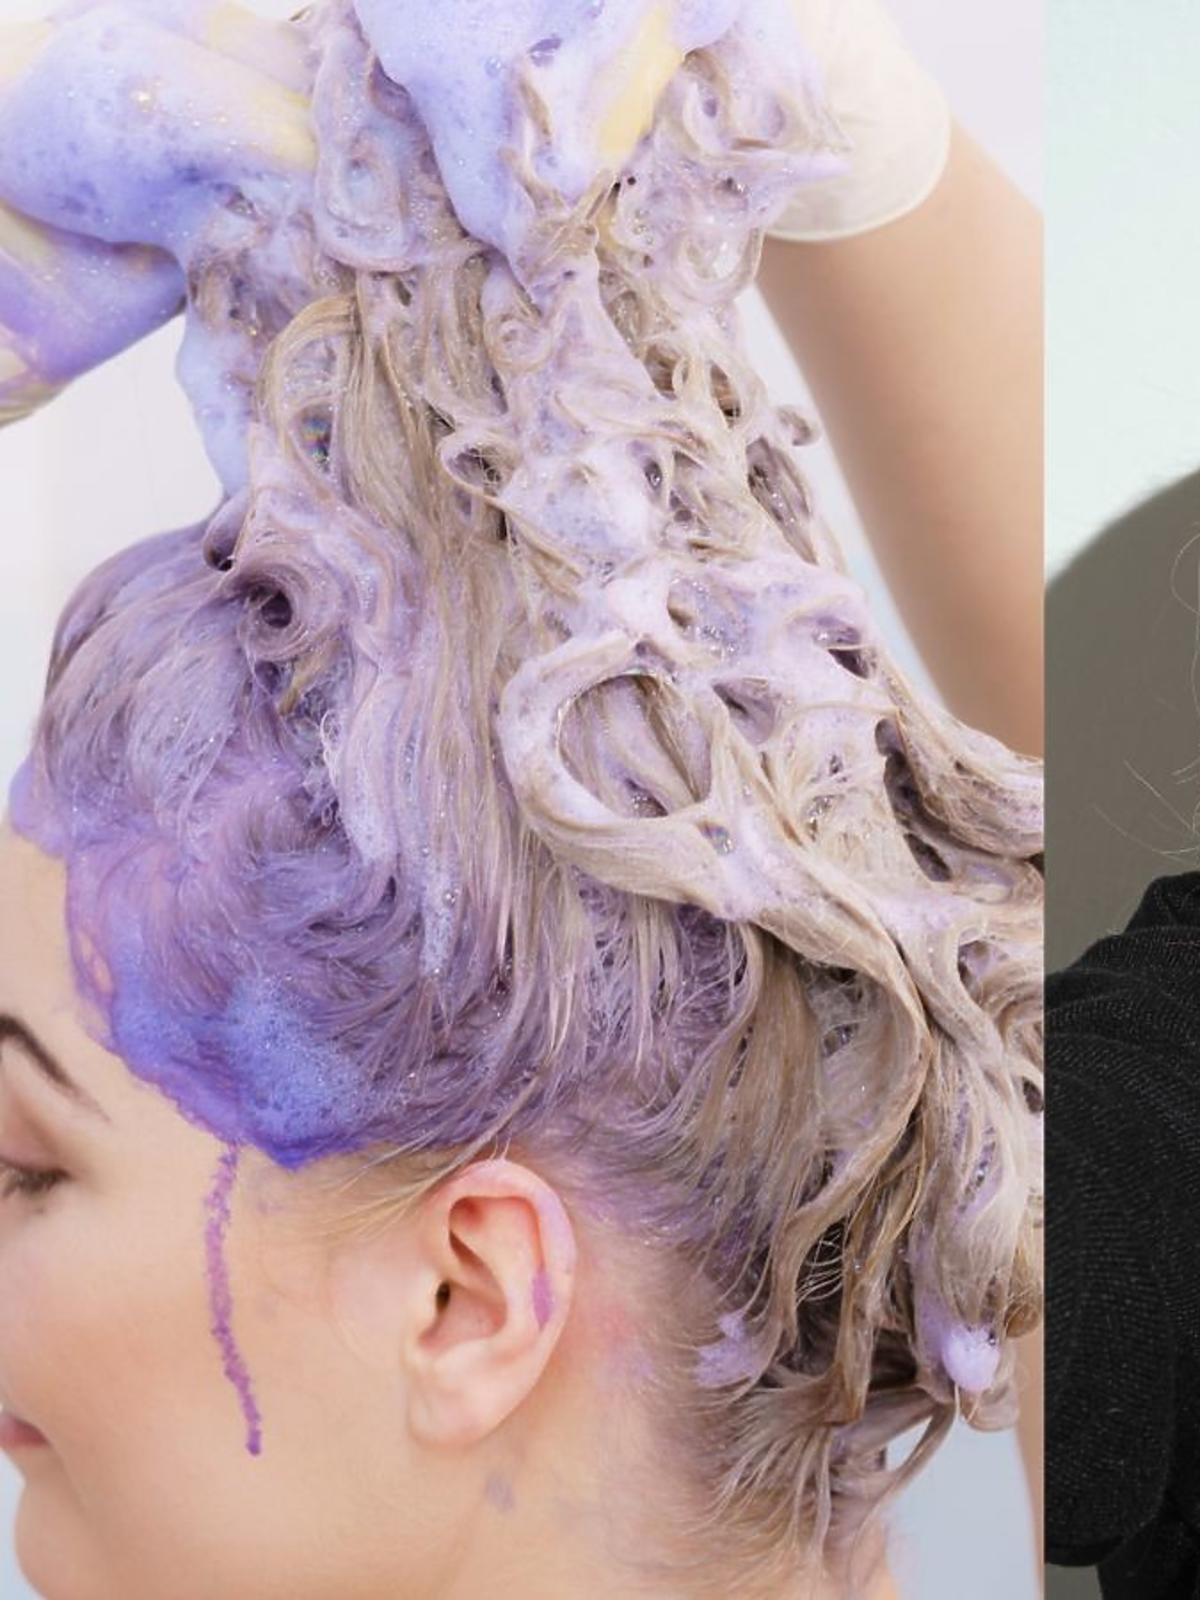 Profesjonalny szampon do blondu za 16 zł zastąpi ci wizytę u fryzjera za 600 zł! „Piękny chłodny kolor i miękkie włosy”